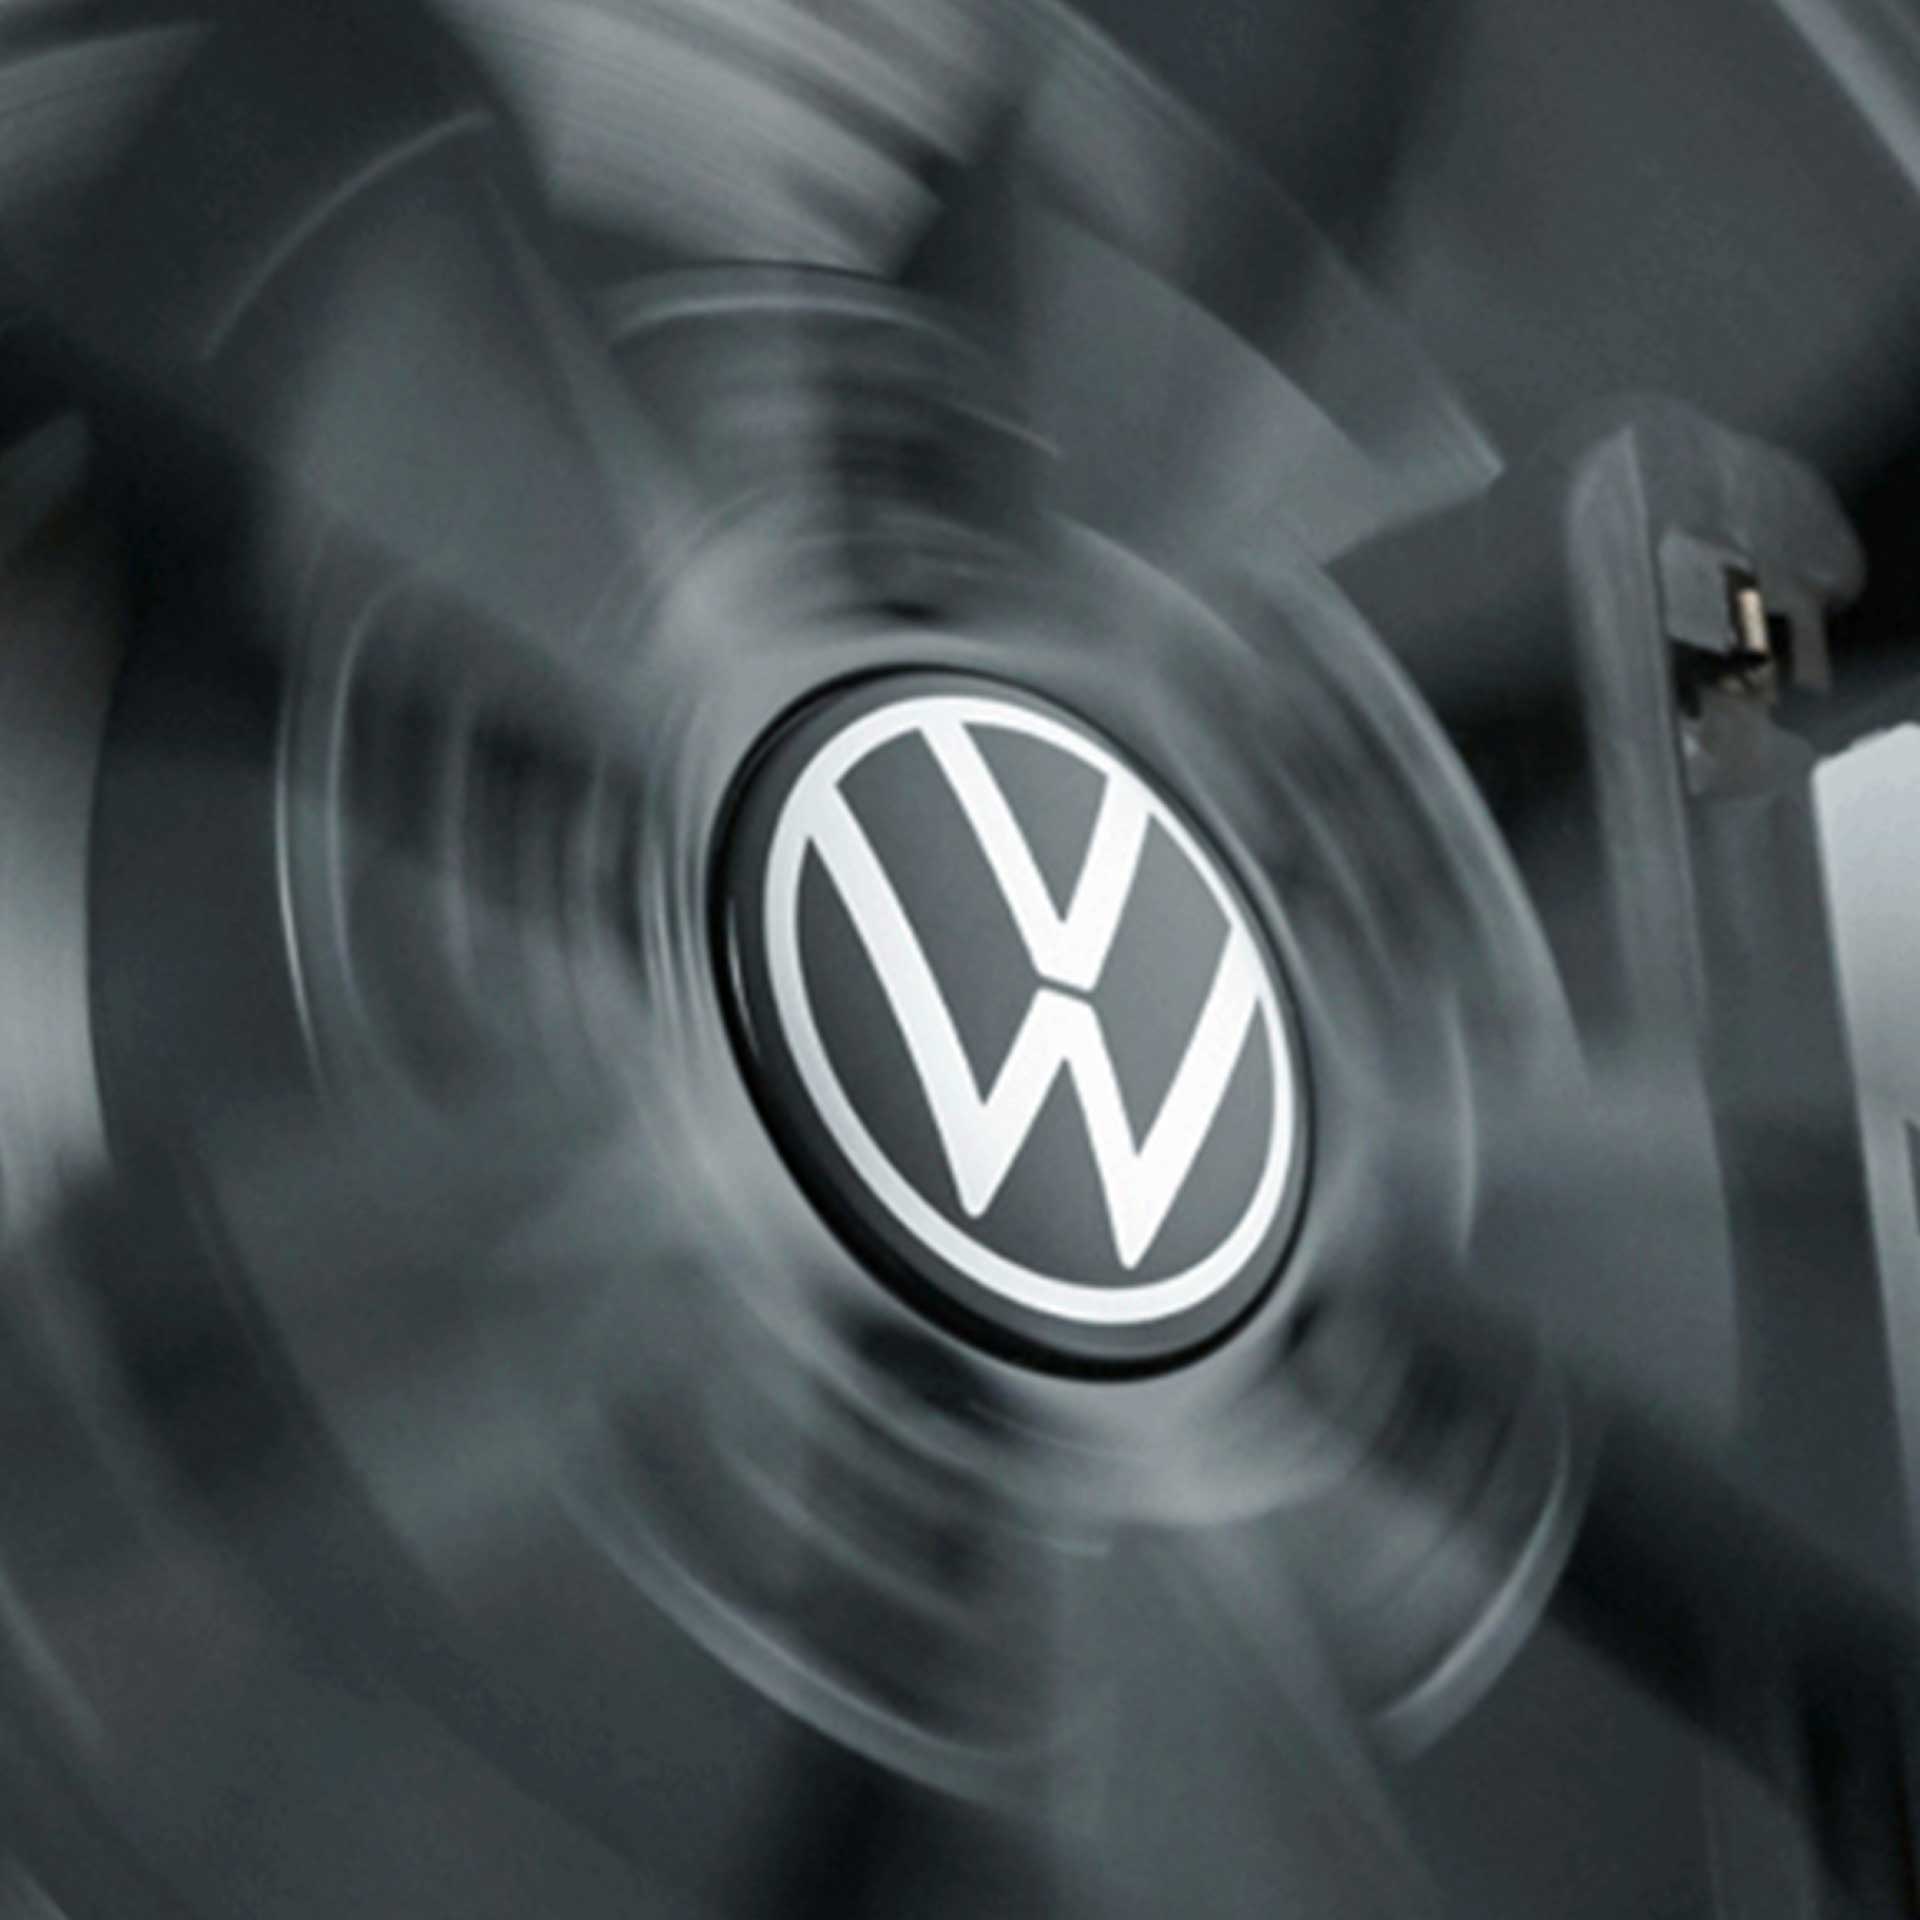 Volkswagen feststehende Radnabendeckel dynamische Spinnerfunktion New Volkswagen Logo